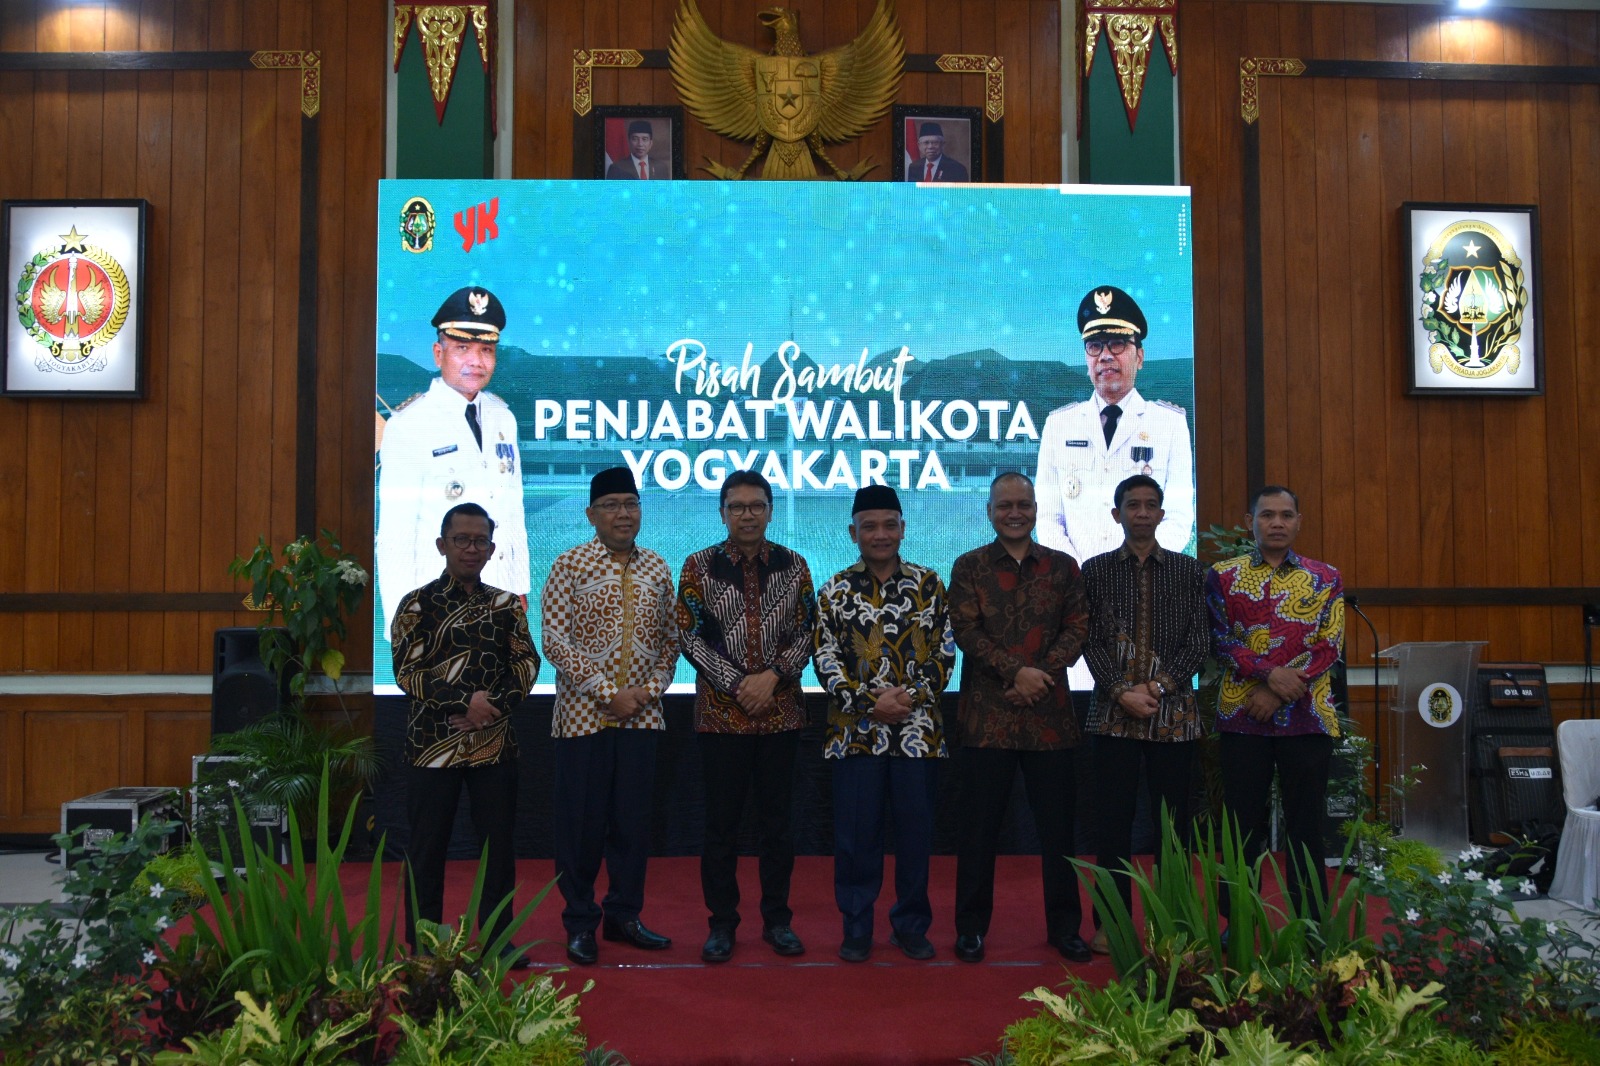 Ketua Pengadilan Negeri Yogykarta Hadir dalam Pisah Sambut Pejabat Wali Kota Yogyakarta 